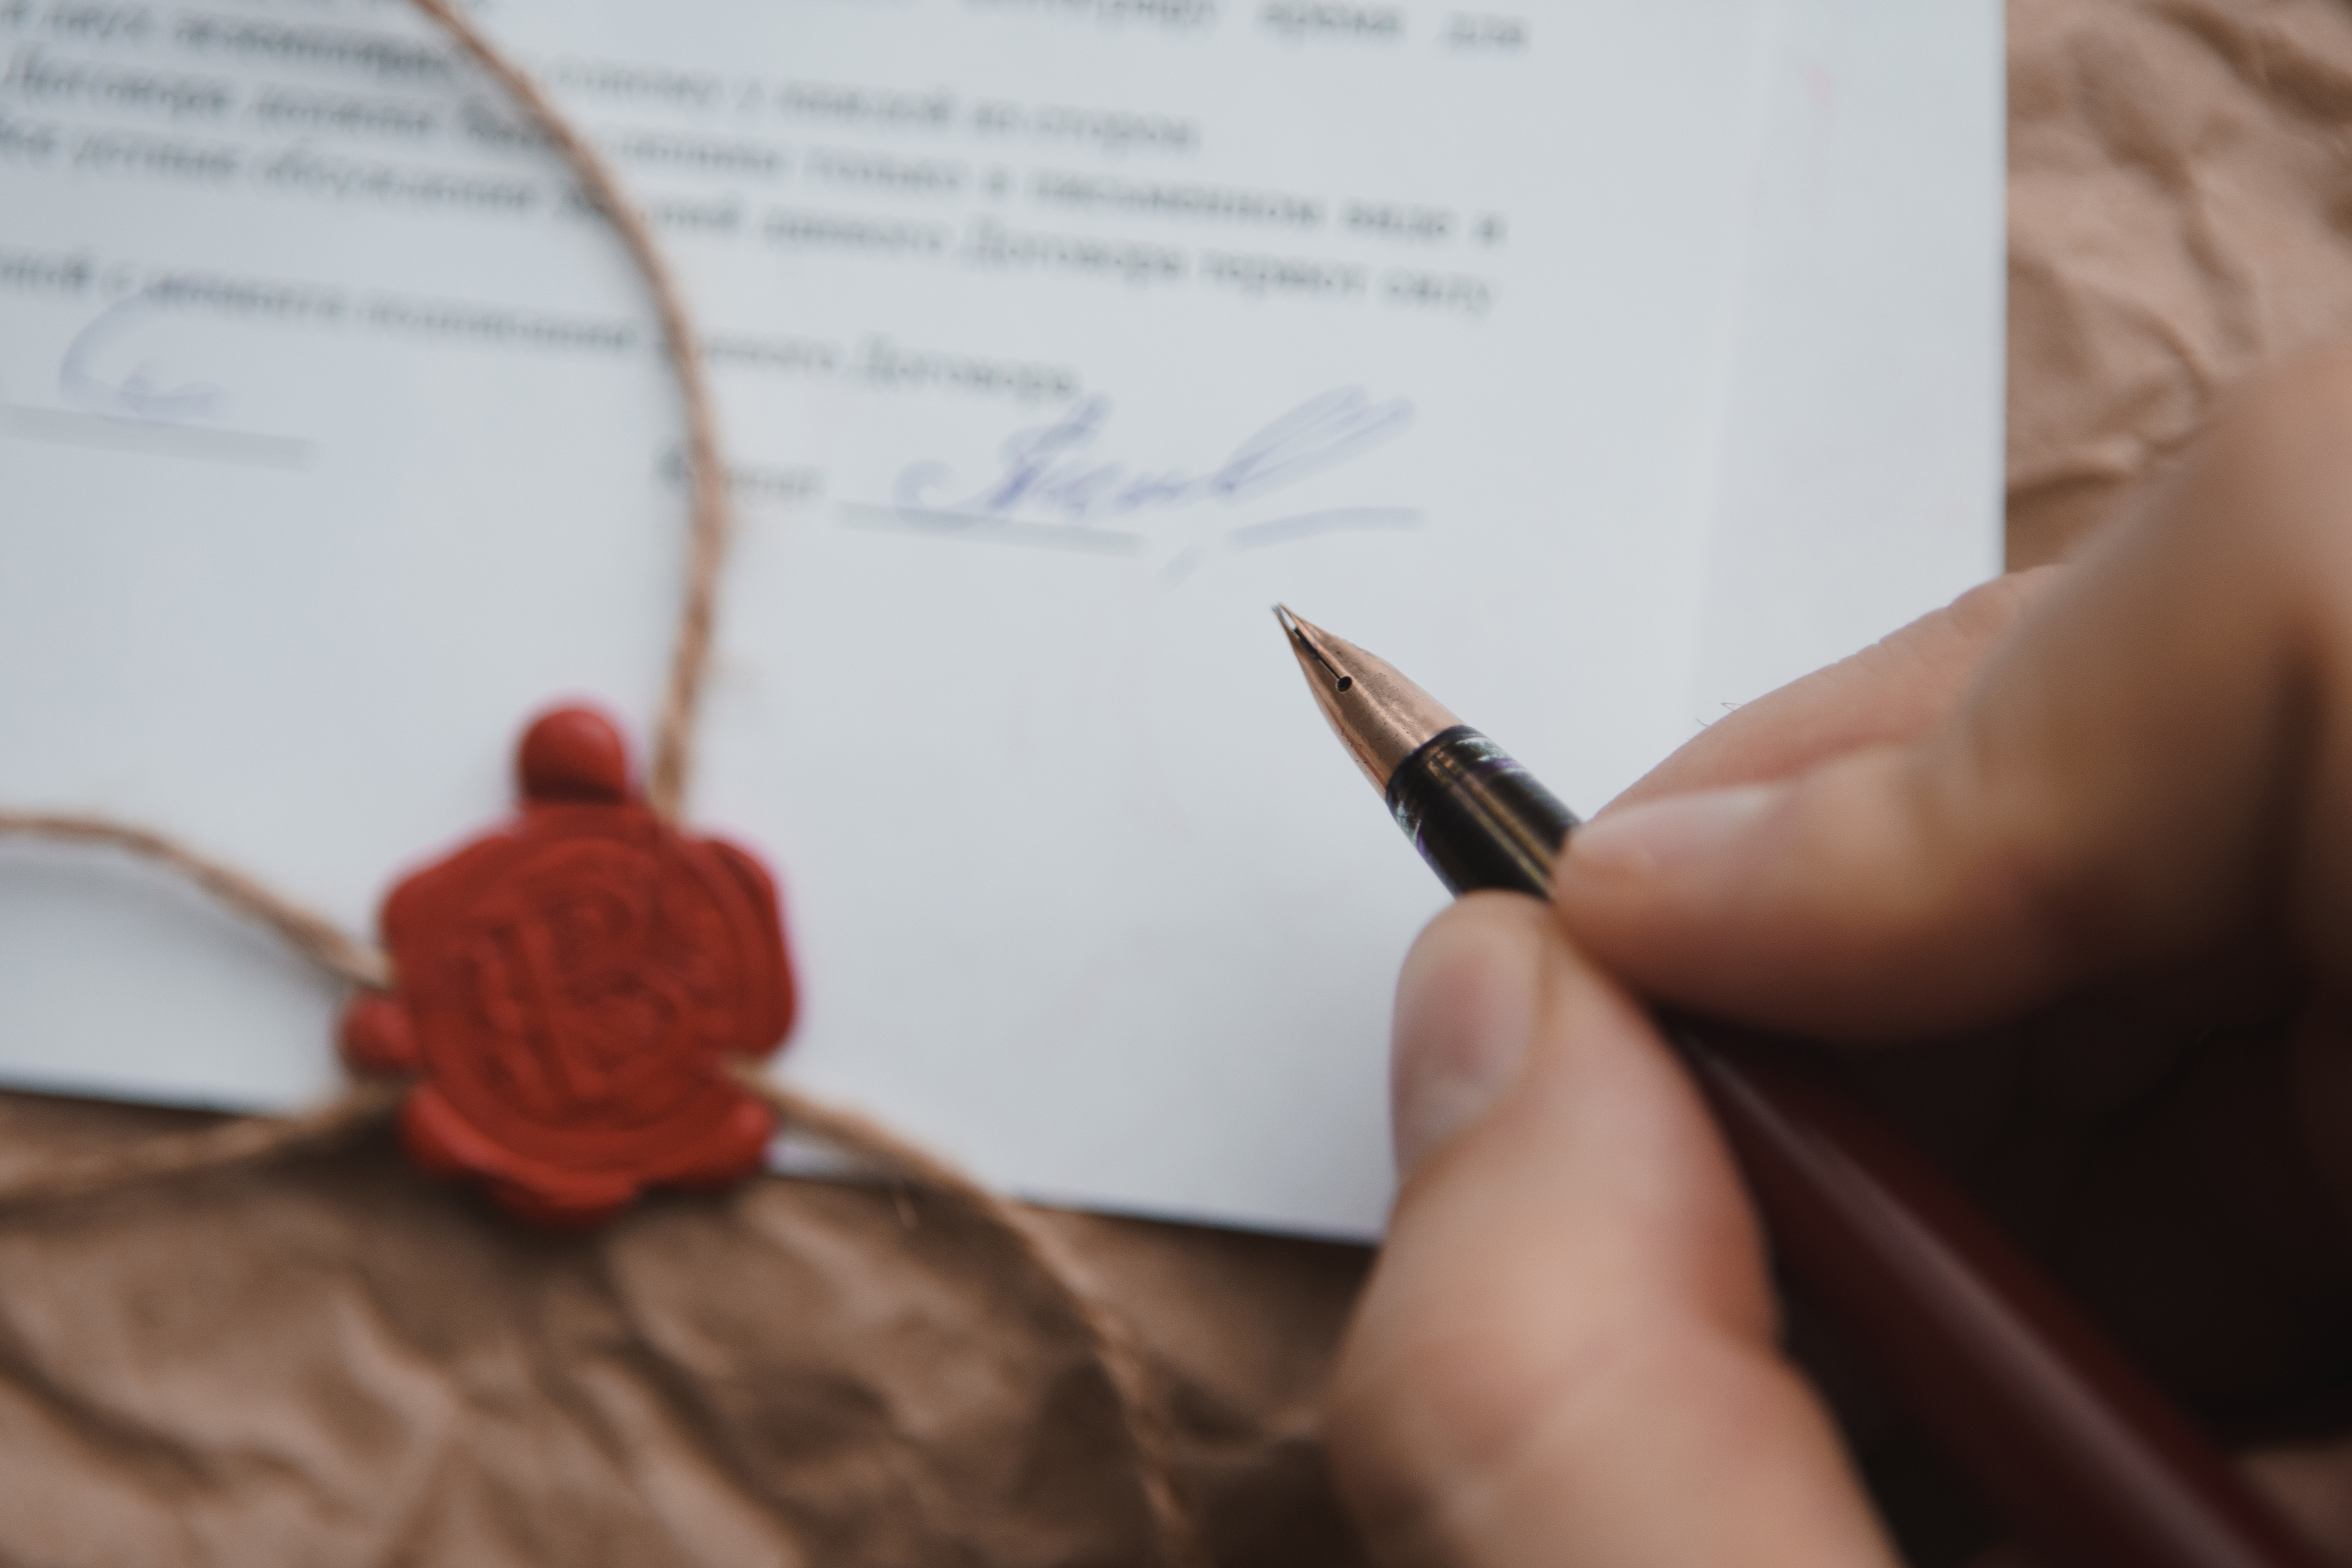 Une personne signant un document | Source : Shutterstock